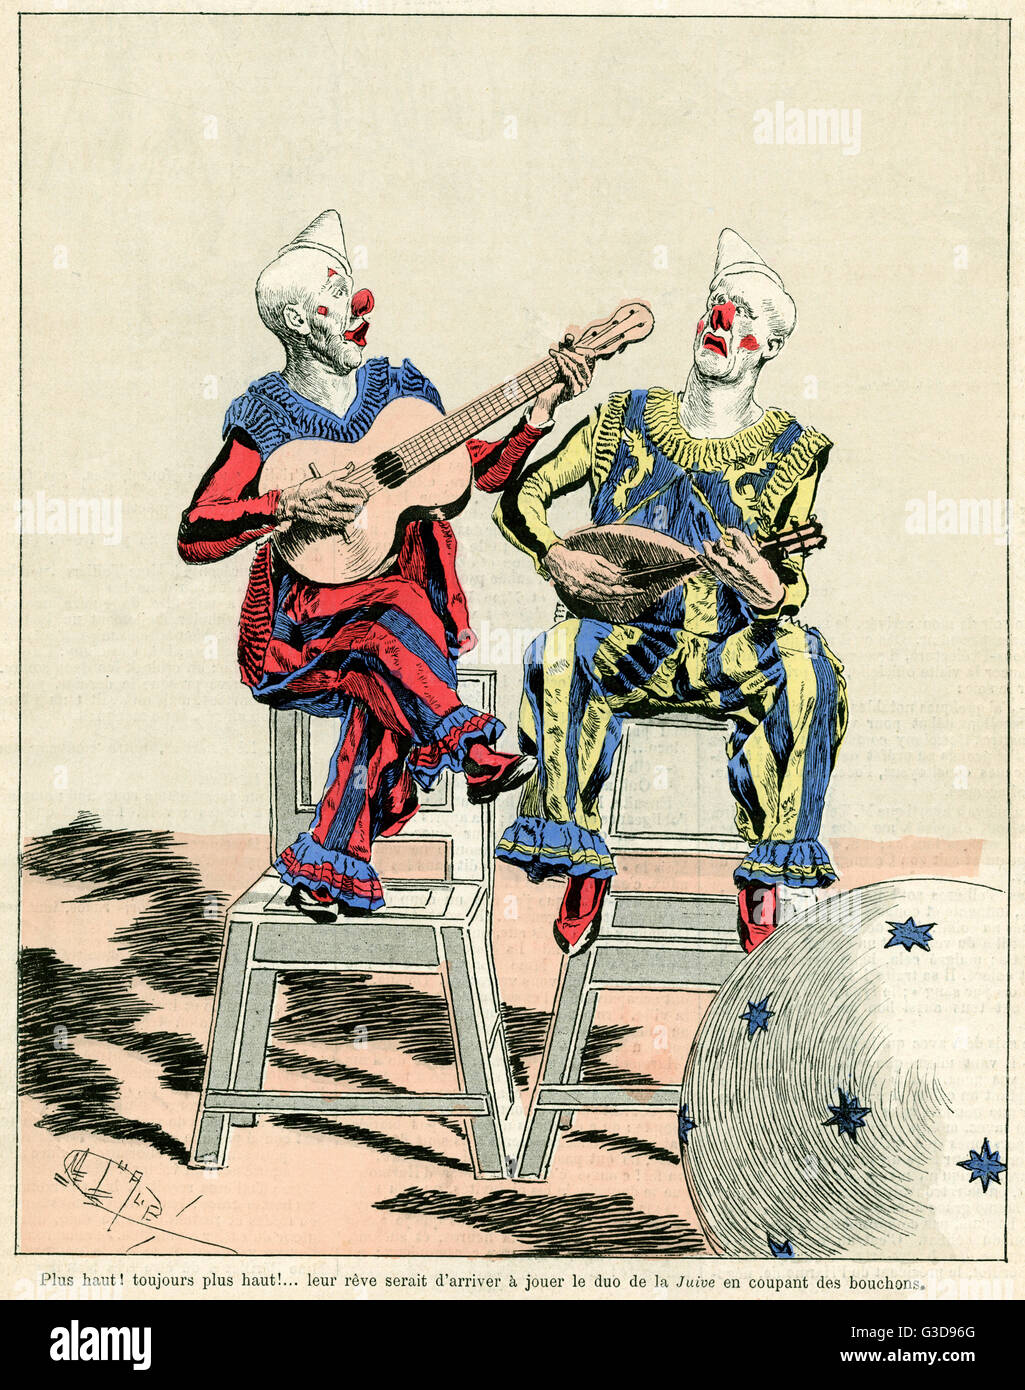 Al circo, due clown suonano strumenti musicali 1888 Foto Stock